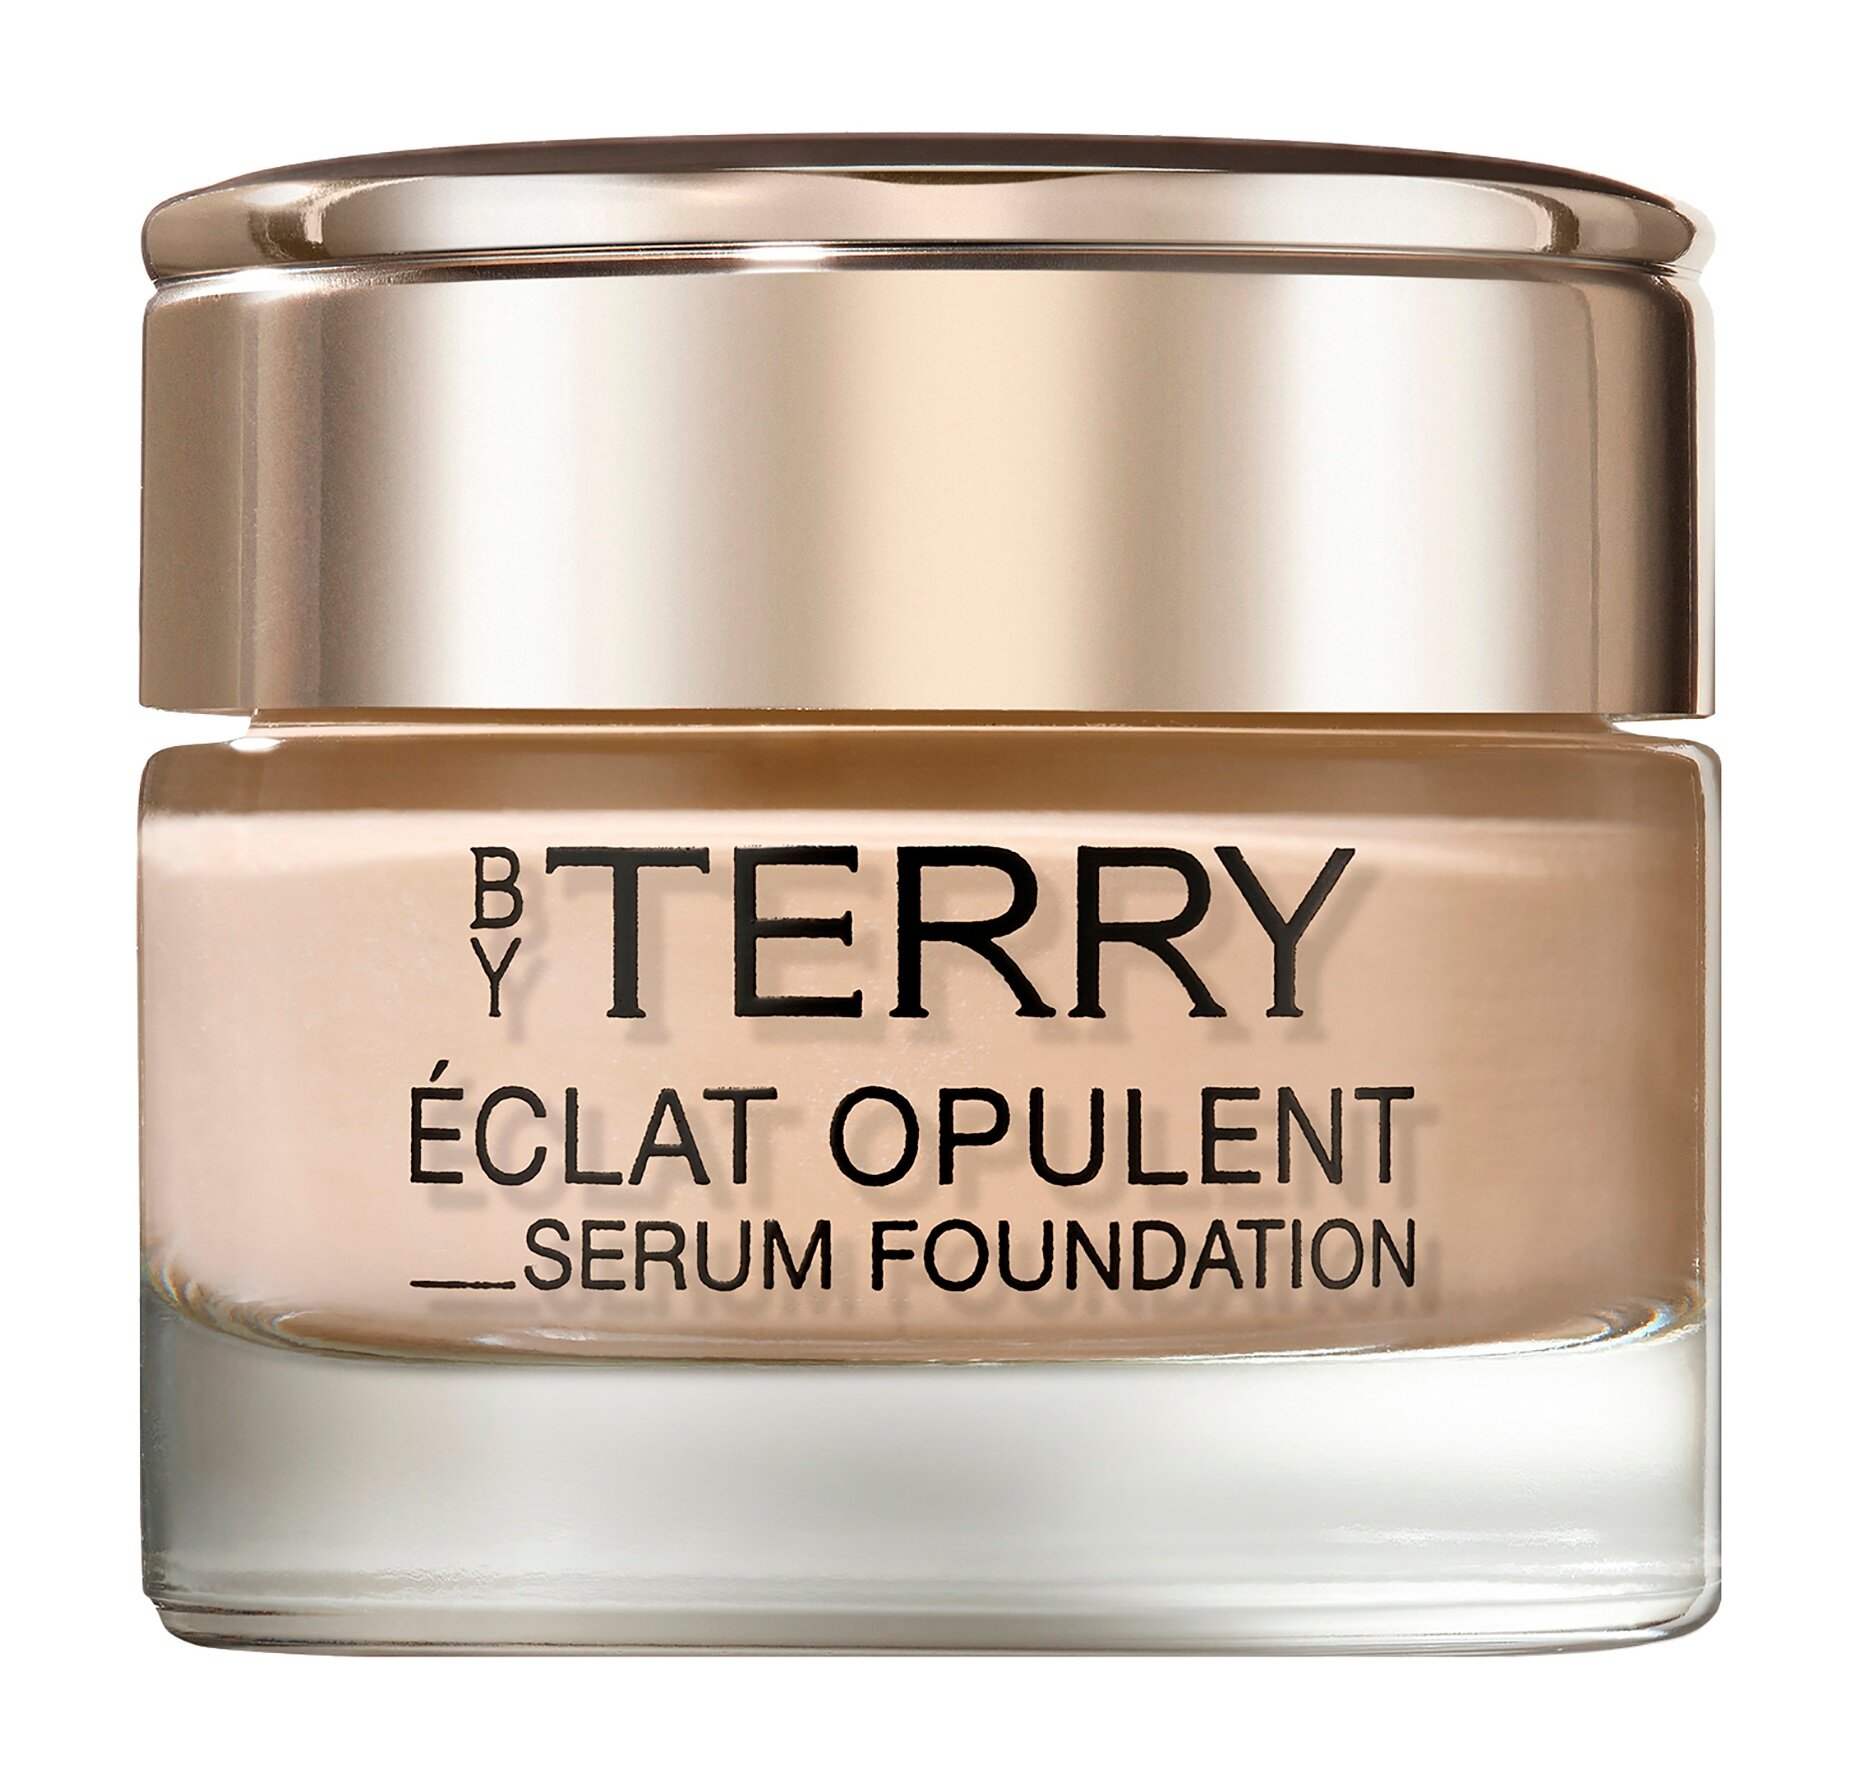 BY TERRY Eclat Opulent Serum Foundation Тональная сыворотка с лифтинг эффектом, 30 мл, 2. Cream